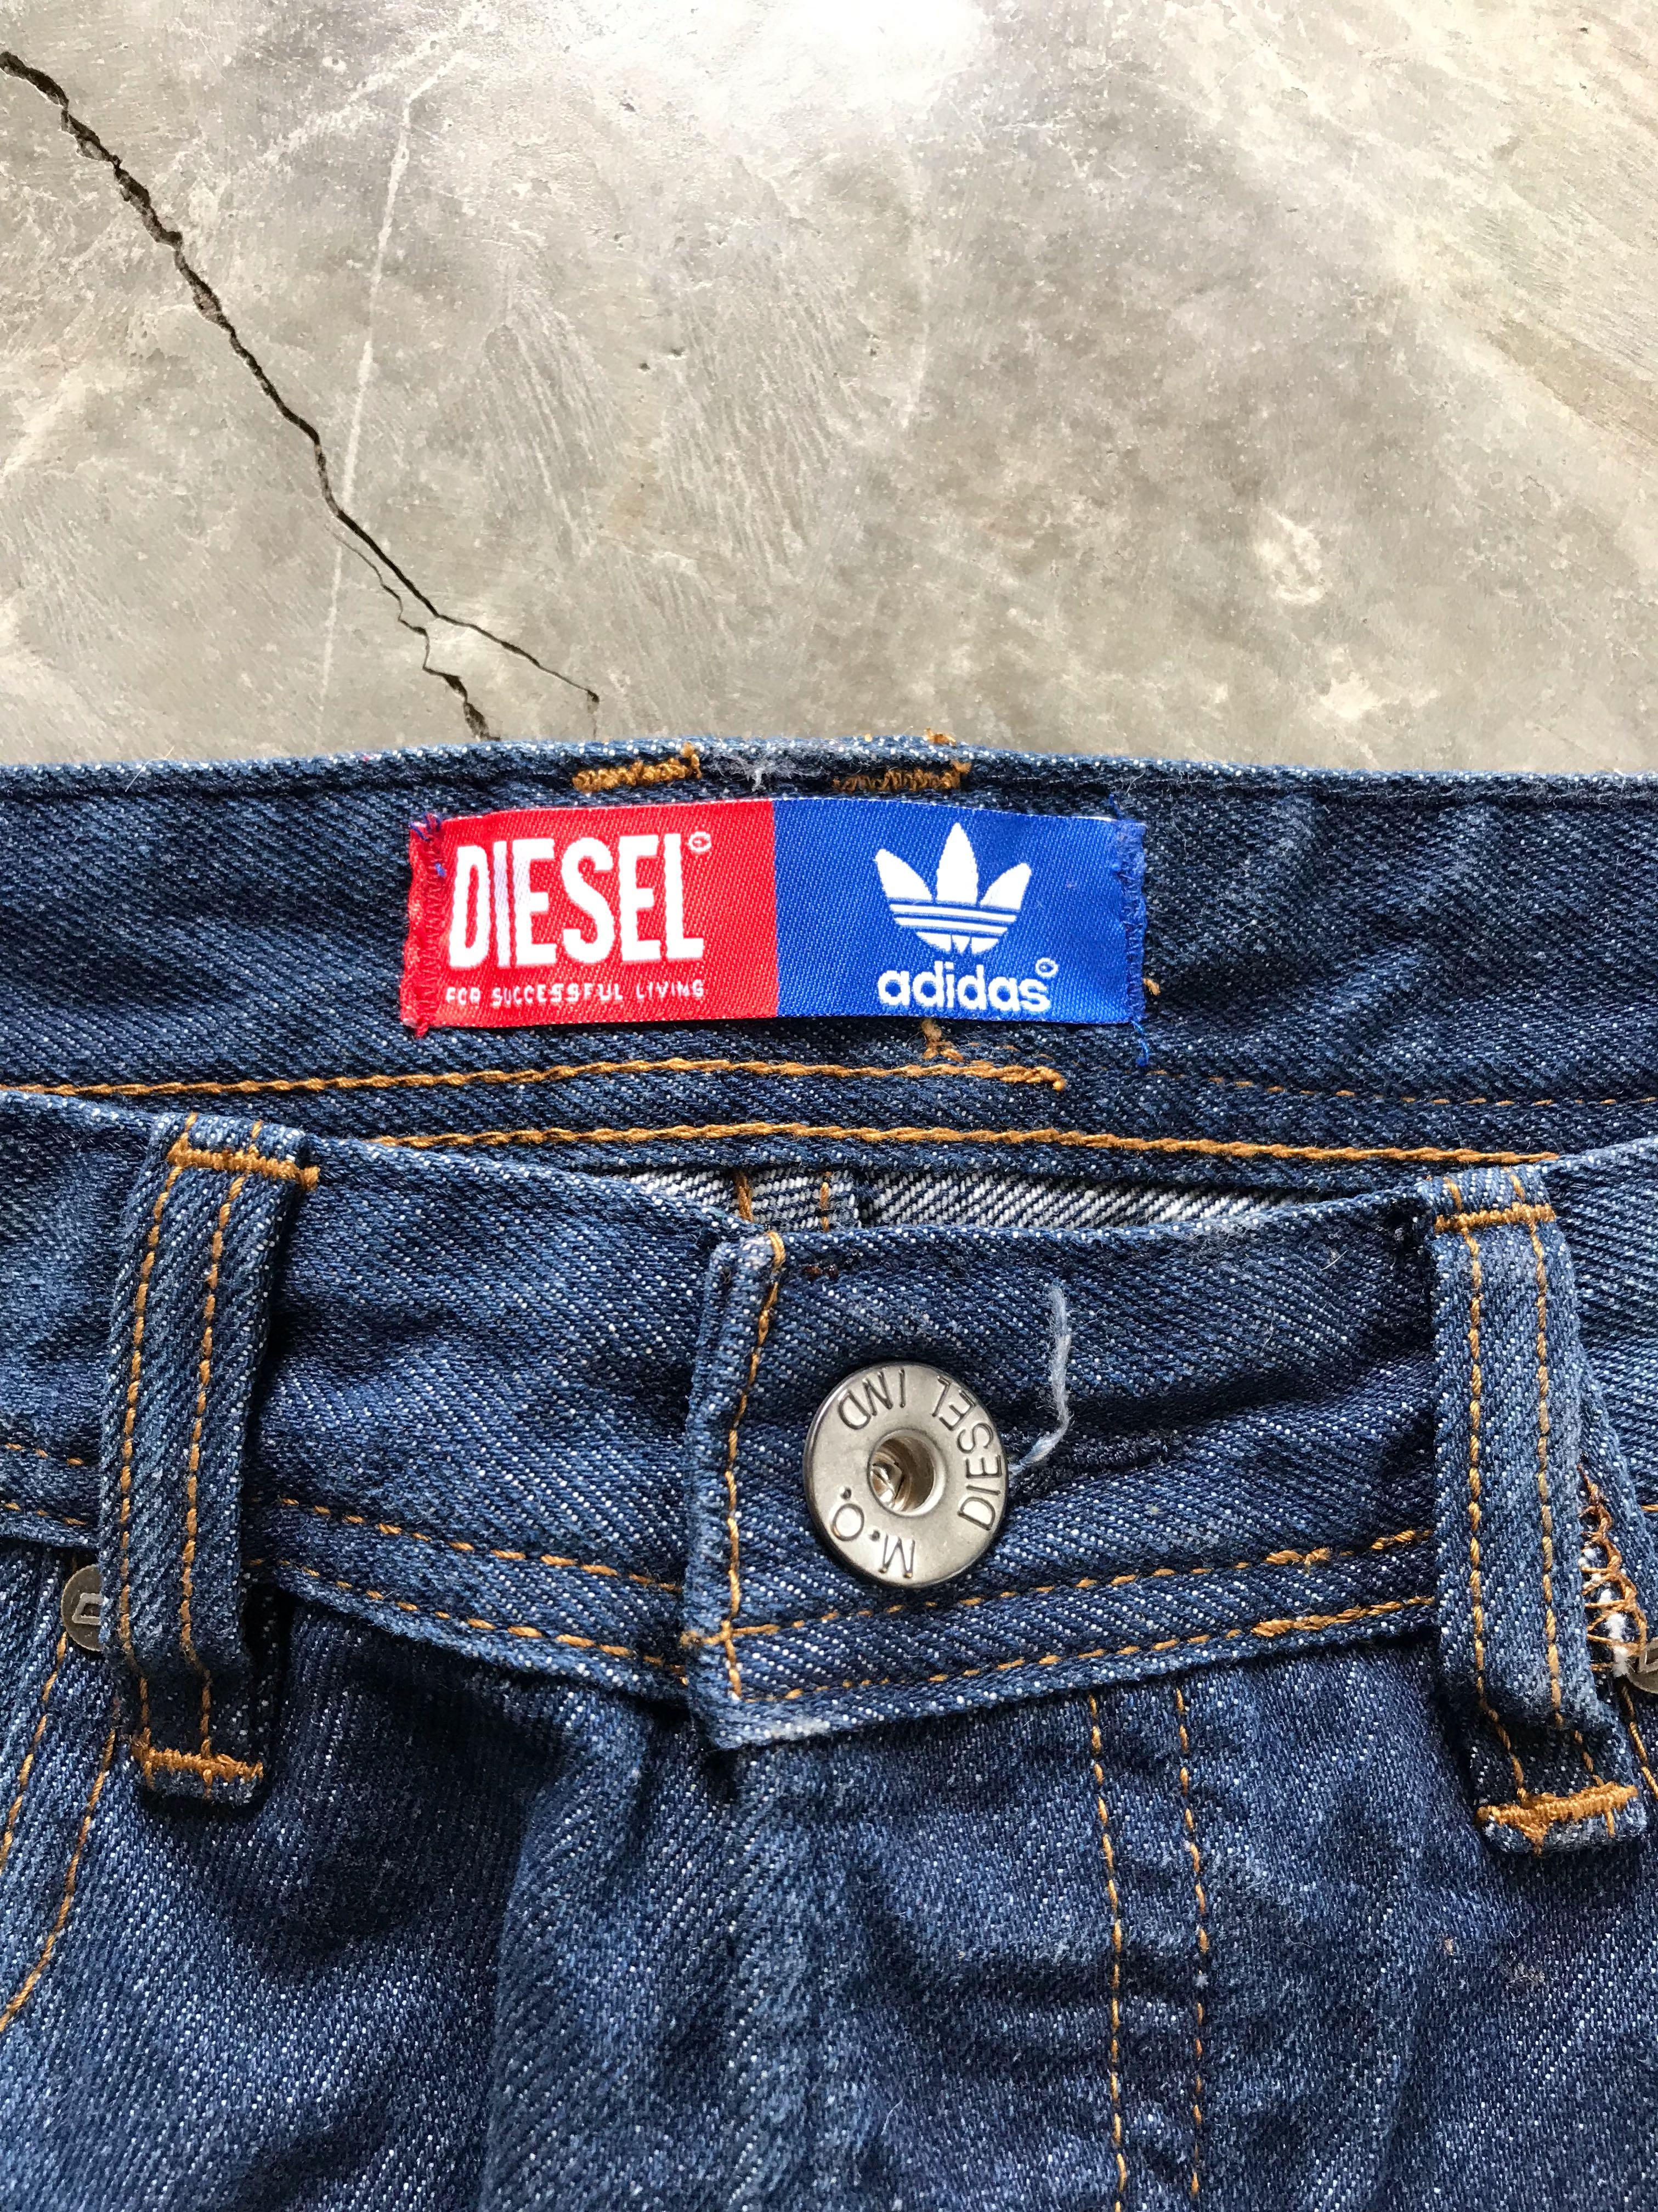 adidas x diesel jeans